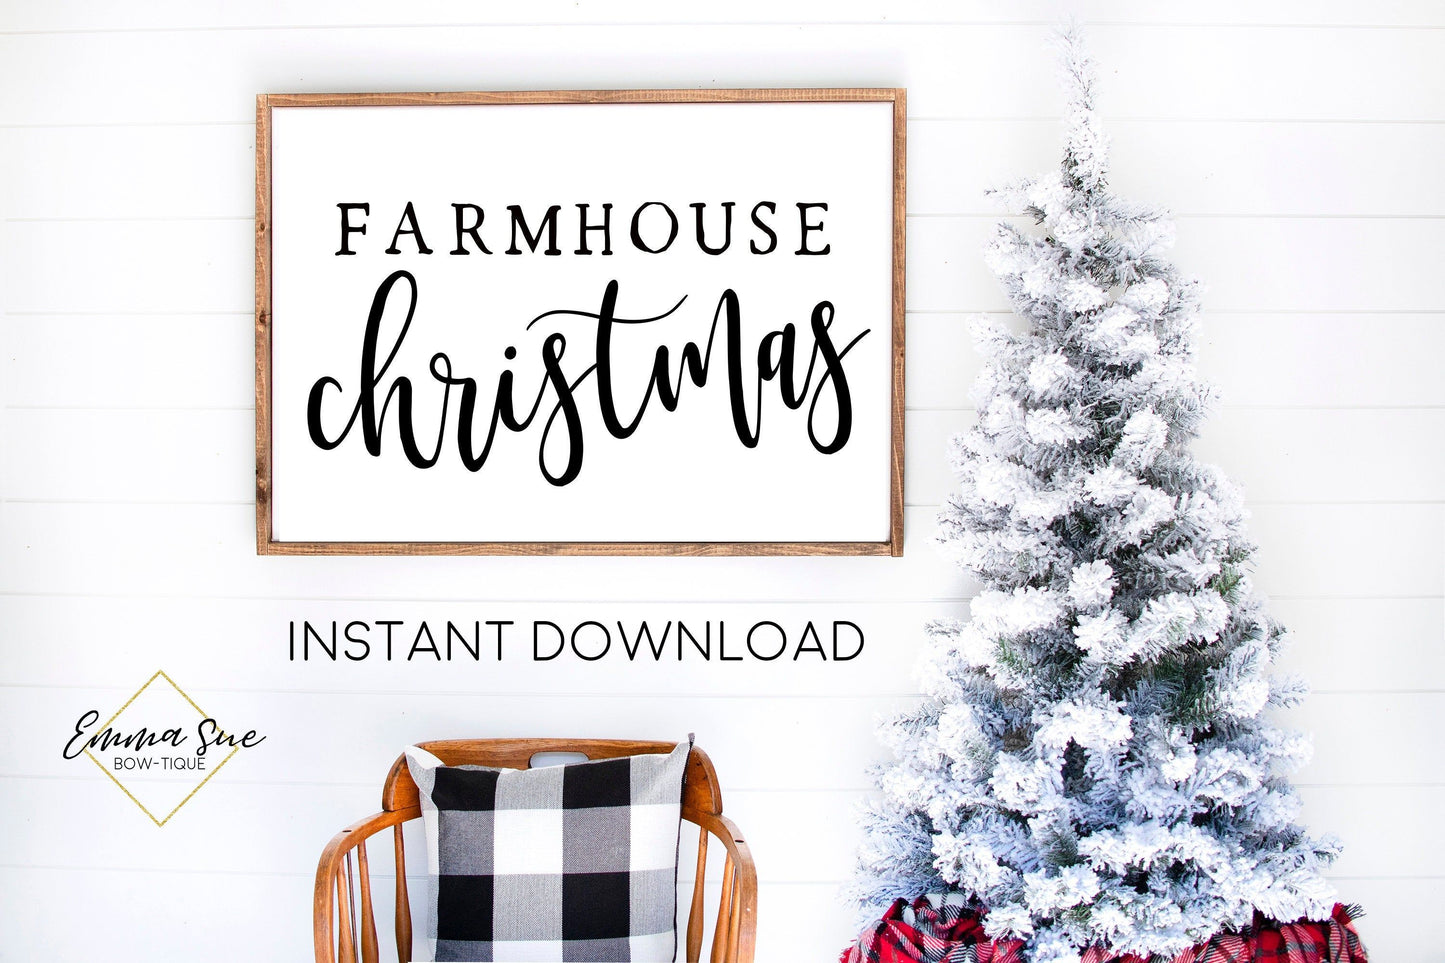 Farmhouse Christmas - Christmas Decor Printable Sign Farmhouse Style  - Digital File